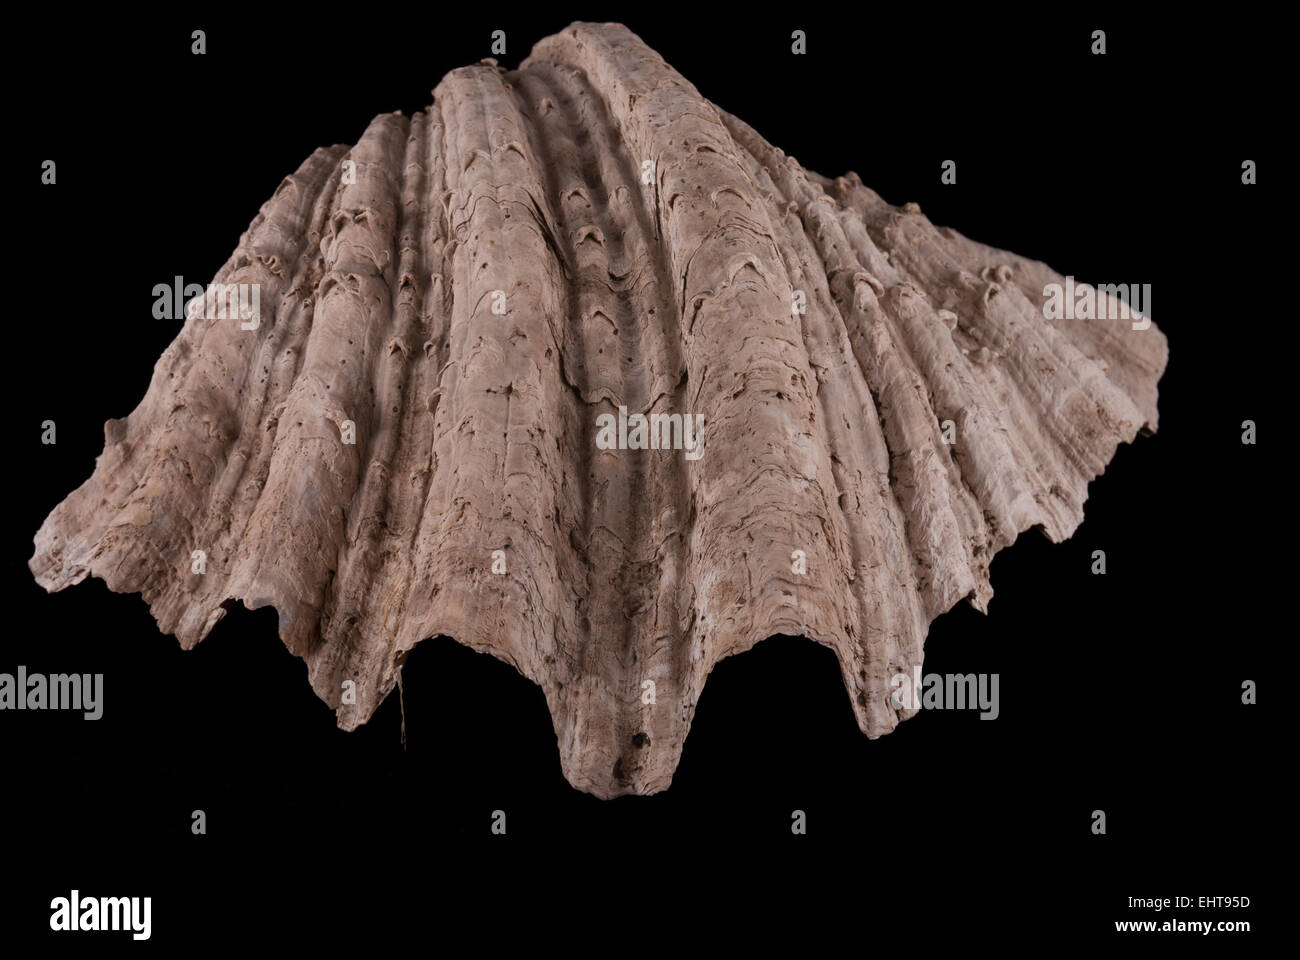 Giant clam, ausgegraben in archäologischen Stätte von Batujaya, West-Java, wahrscheinlich als Statussymbol in Frühgeschichte Periode verwendet. Stockfoto